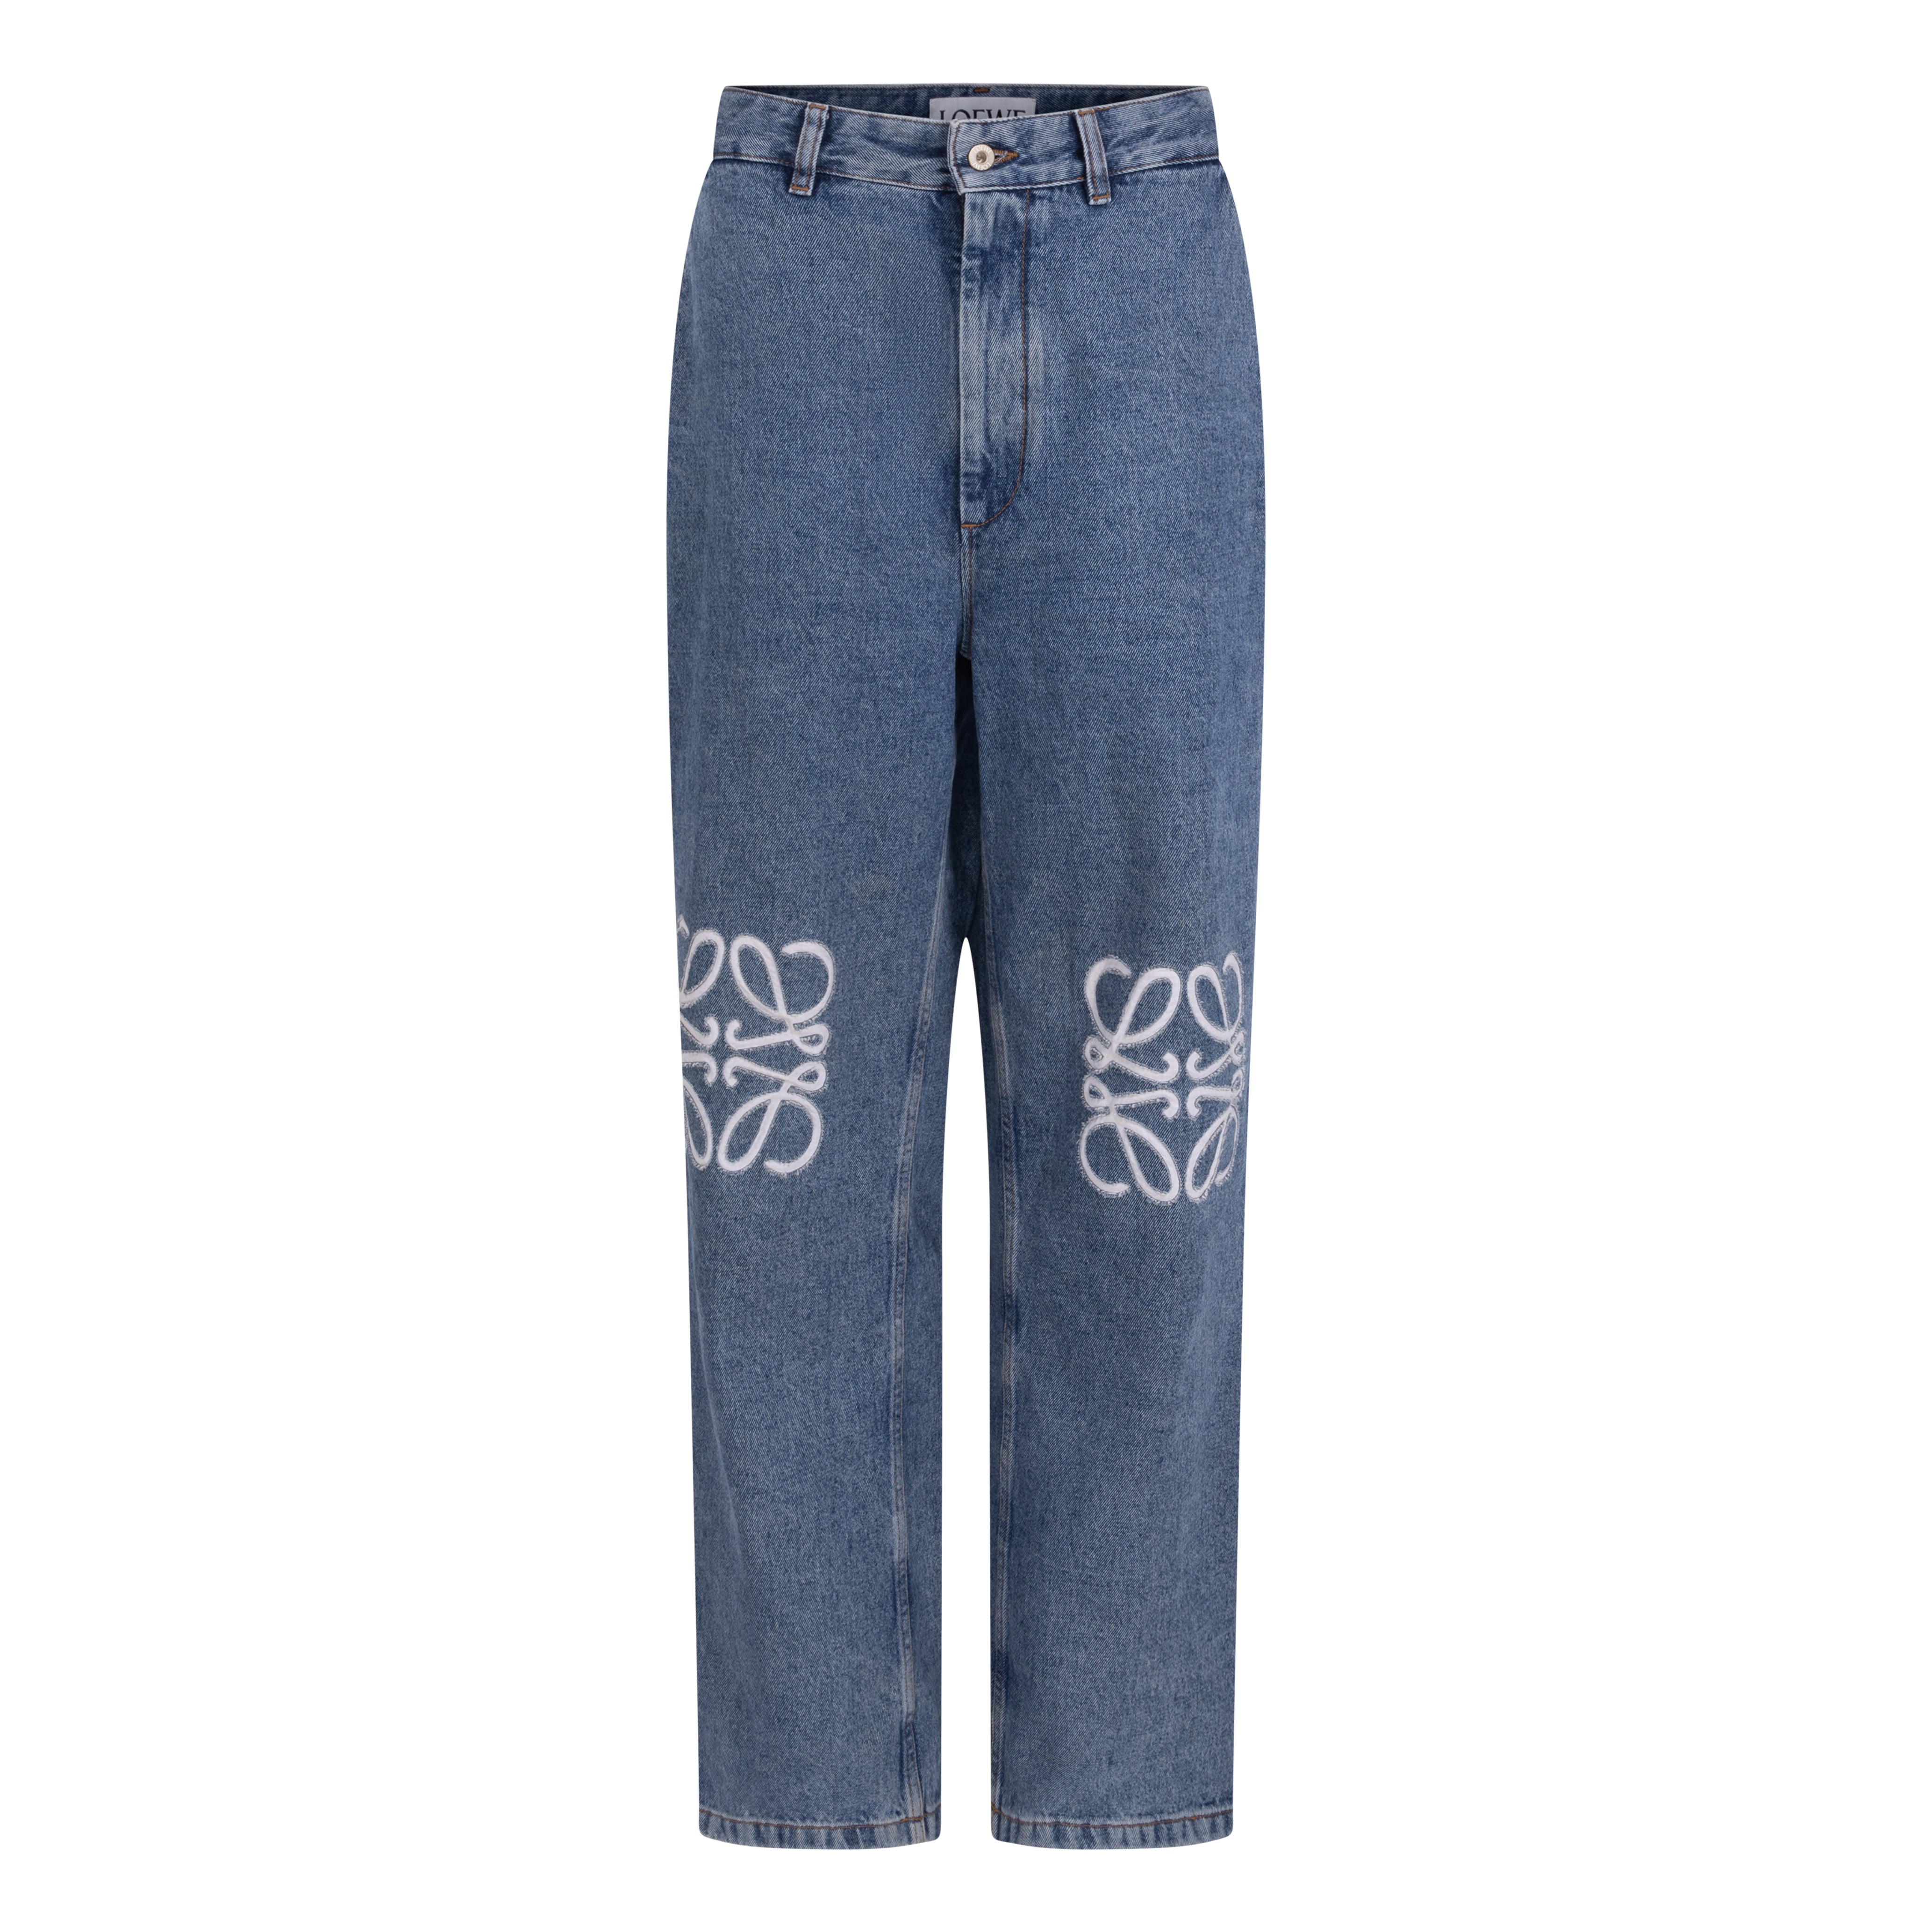 Something Borrowed Loewe Anagram High-Rise Jeans to rent, kledingverhuur